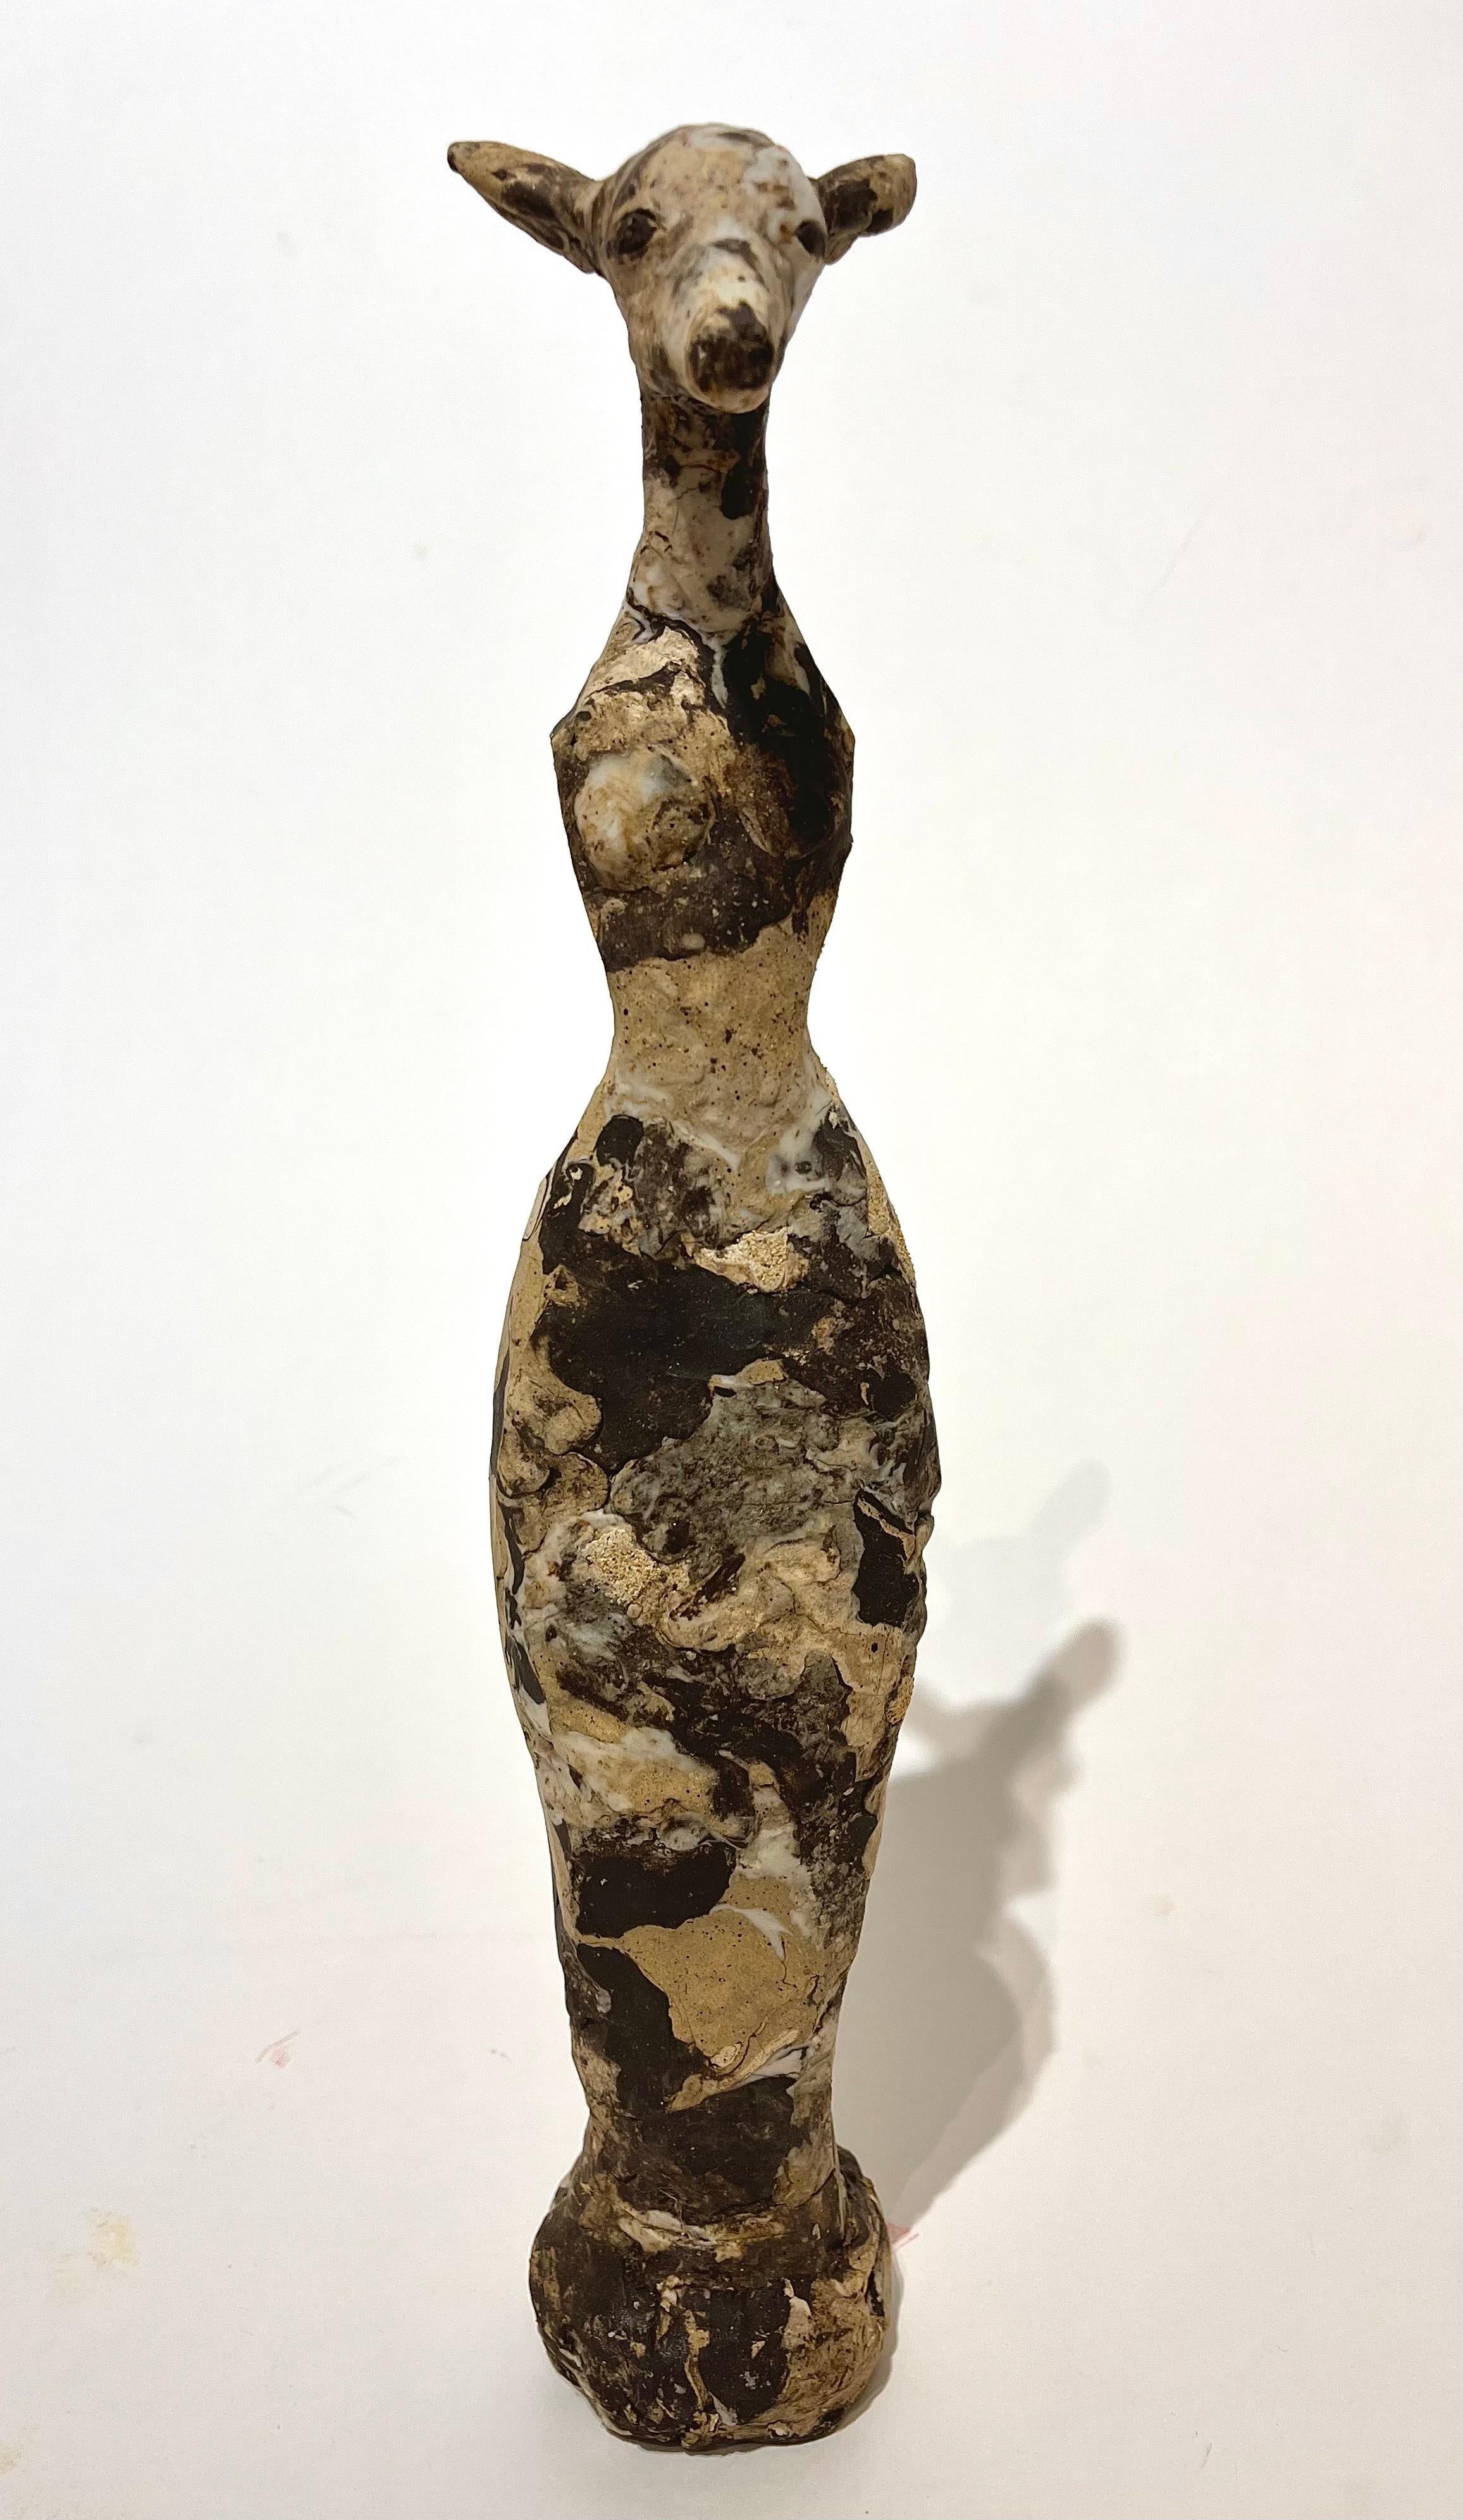 Robin Whiteman Figurative Sculpture - Armless Deer